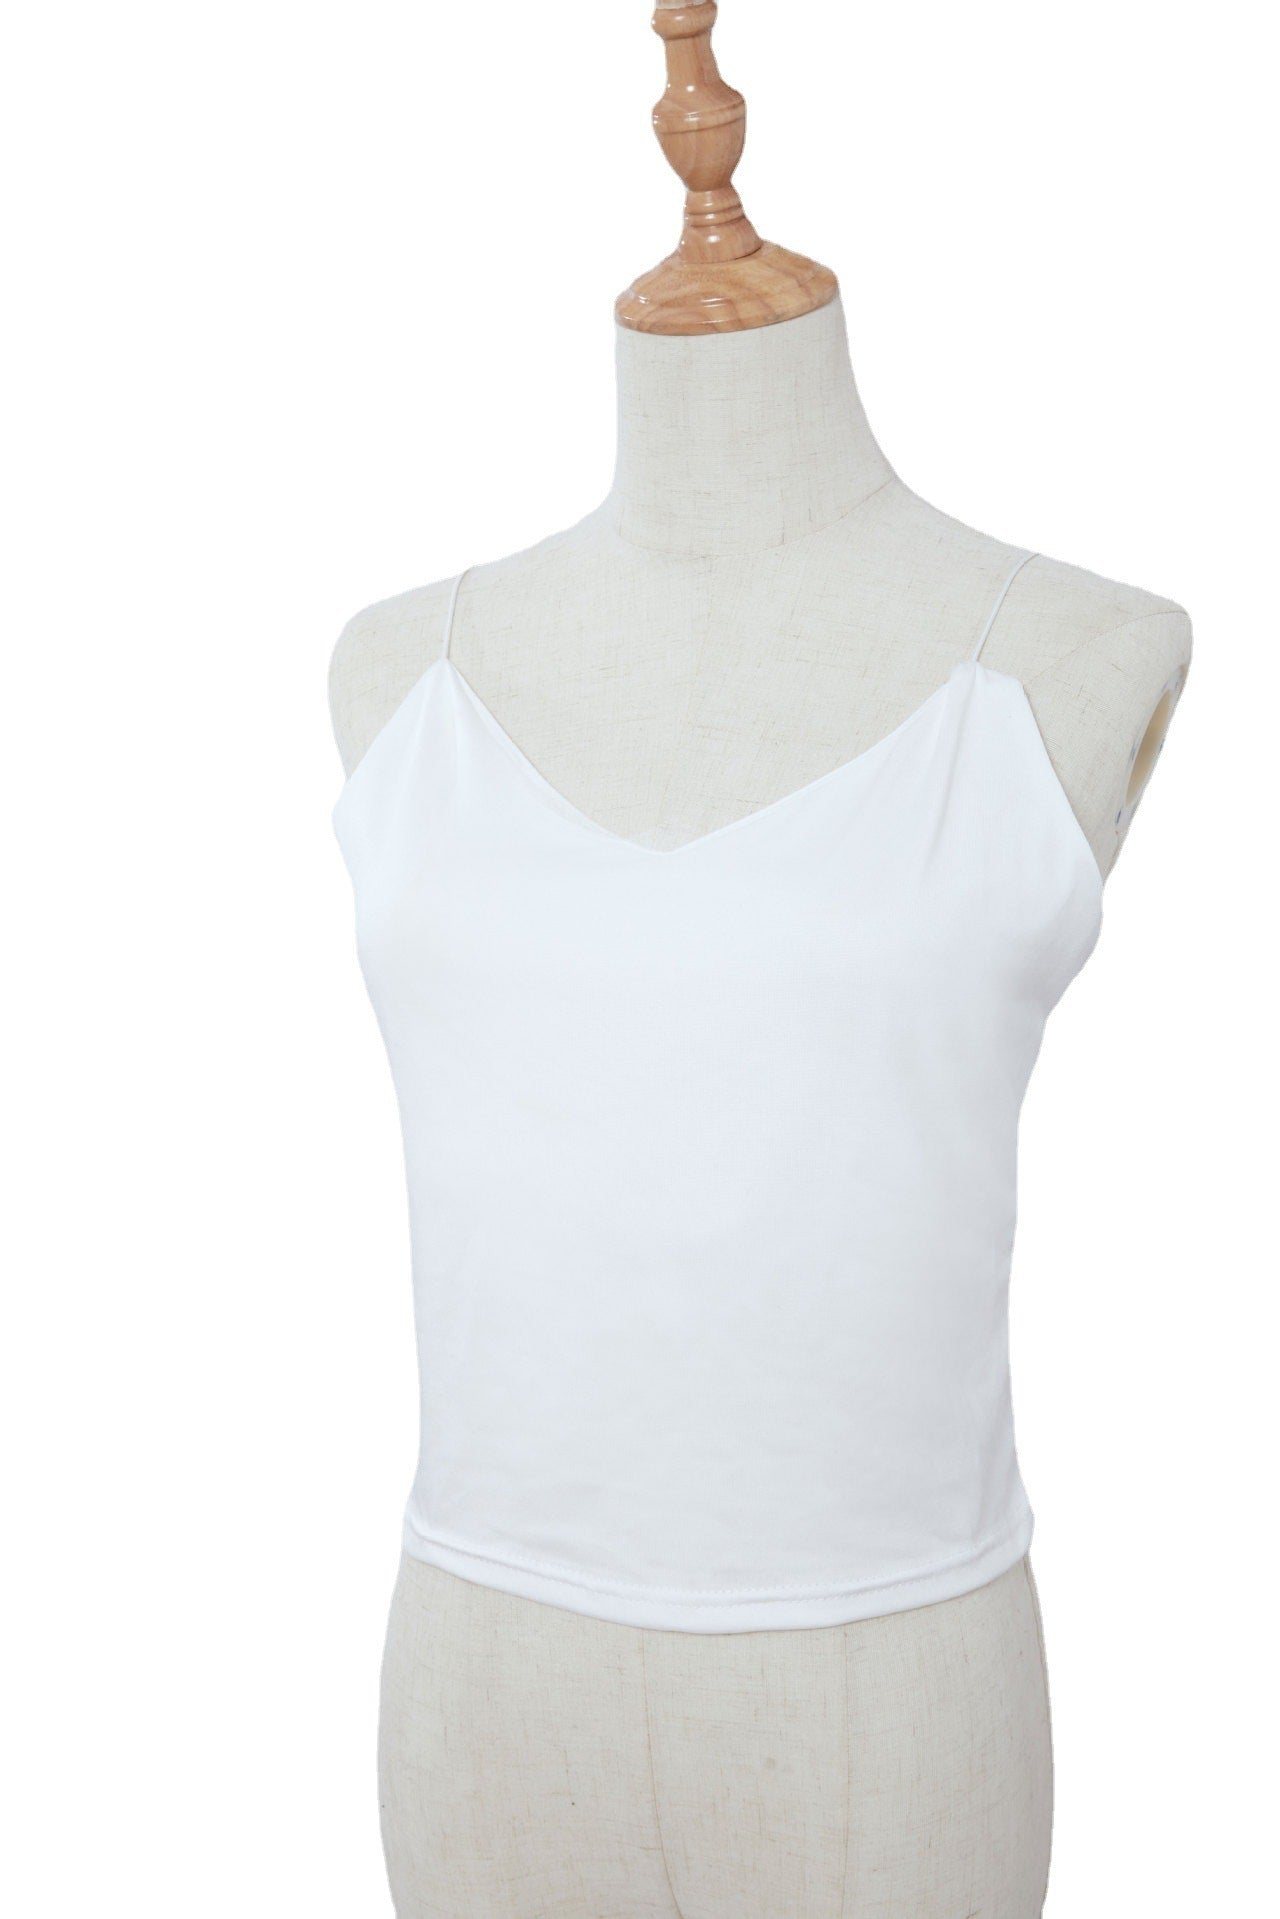 Women's V-neck Strappy Top